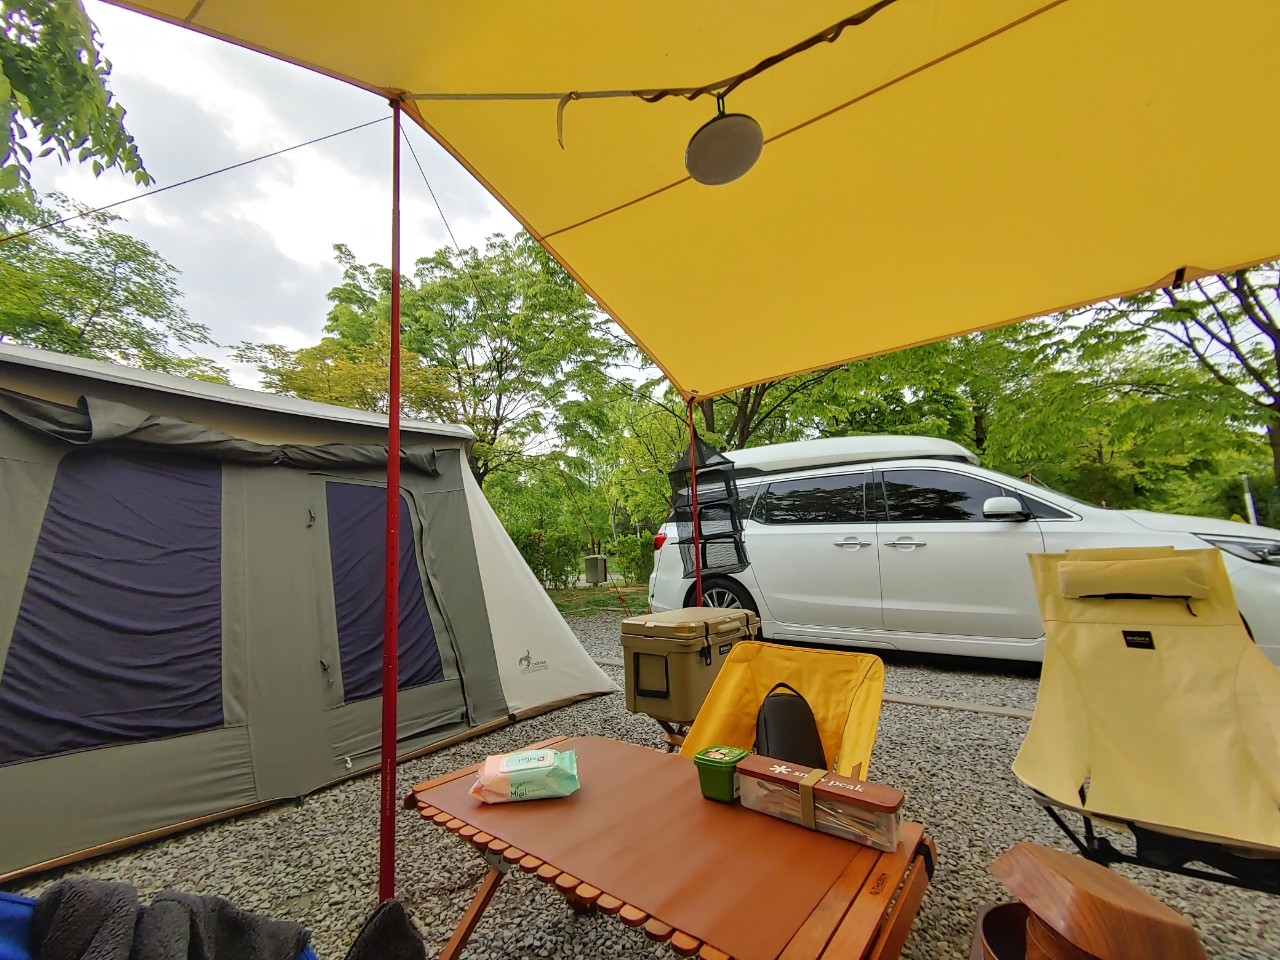 야외, 텐트, 나무, 차량이(가) 표시된 사진

자동 생성된 설명